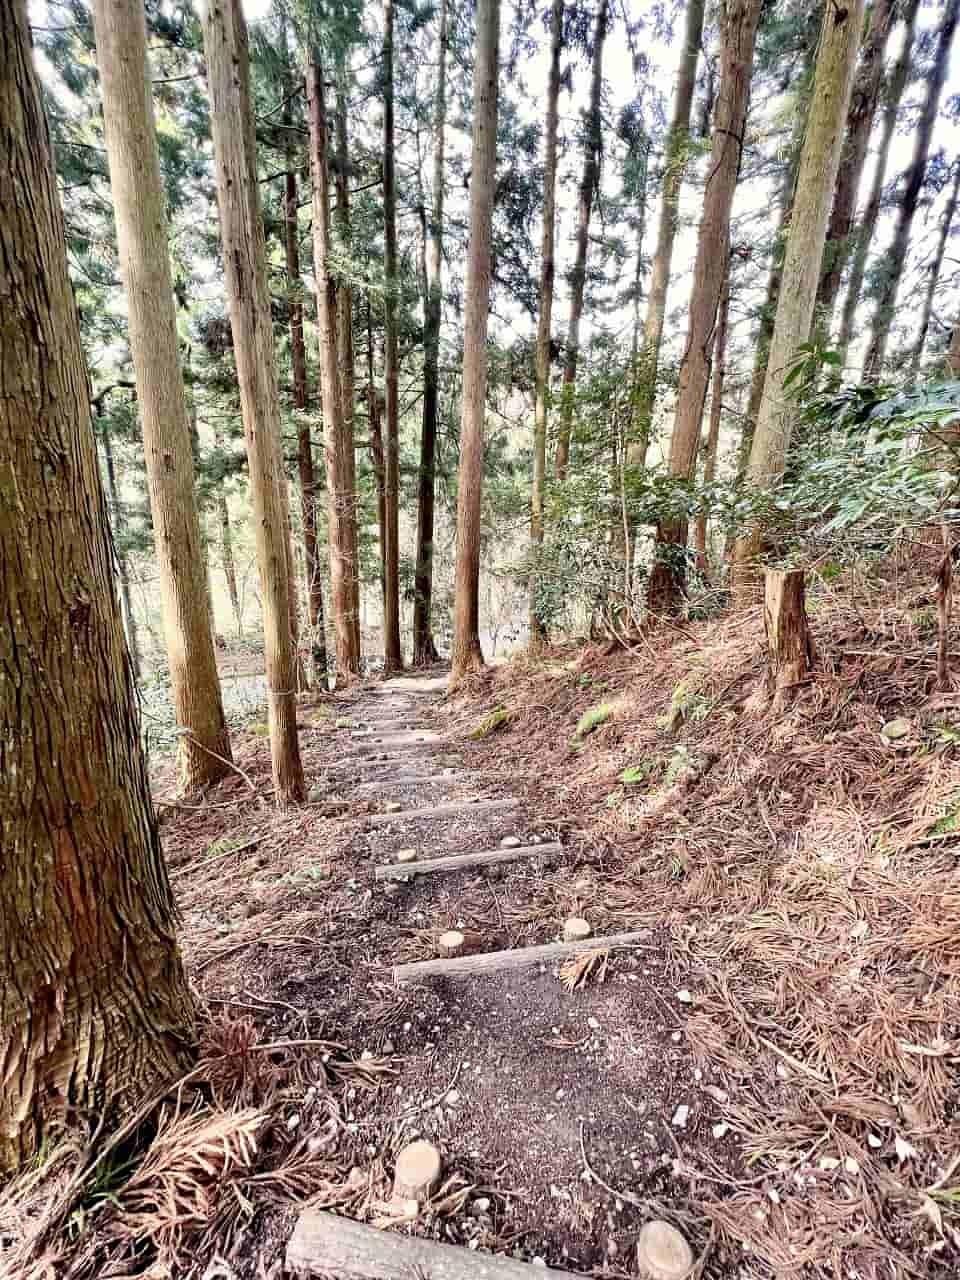 鳥取県西伯伯耆町にある渓流公園『マウンテンストリームきしもと』の様子